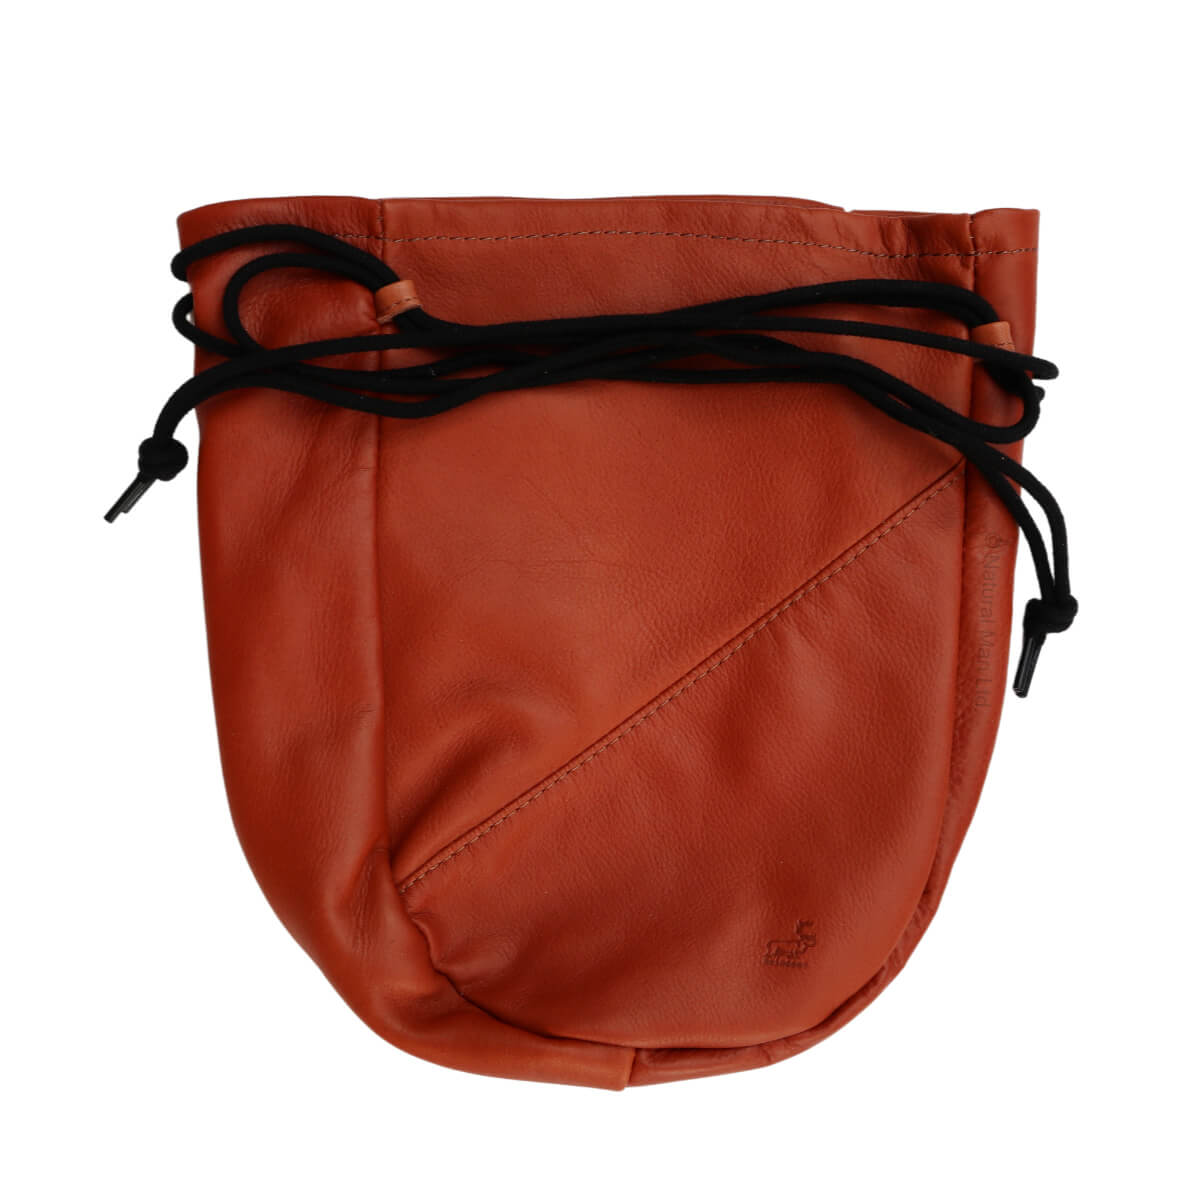 Storage Bag - Reindeer Leather